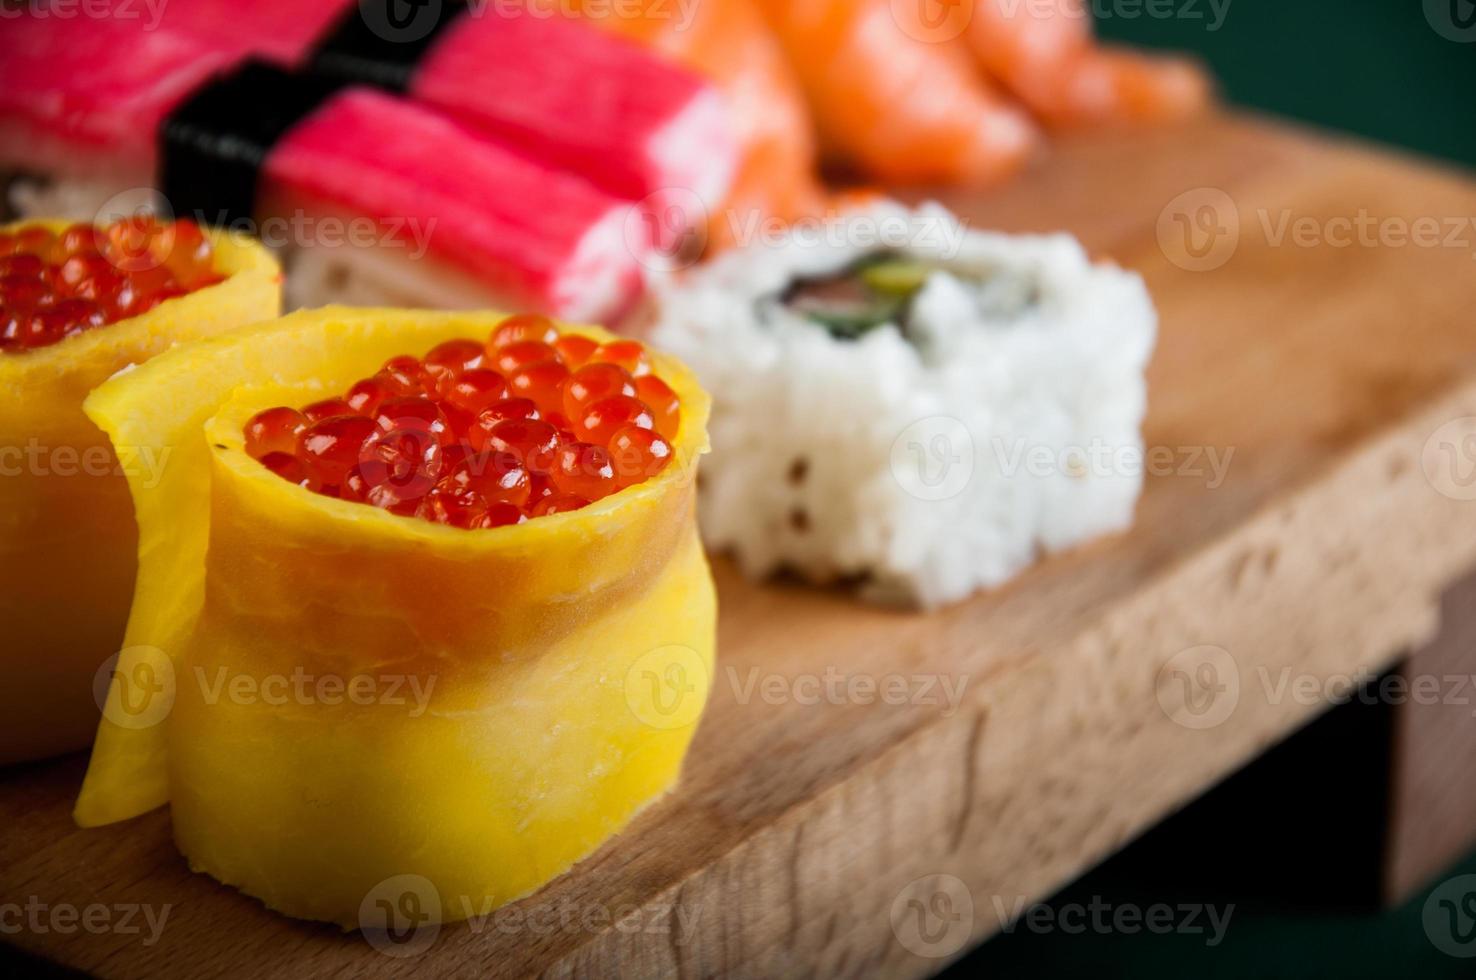 almuerzo japonés, set de sushi fresco foto